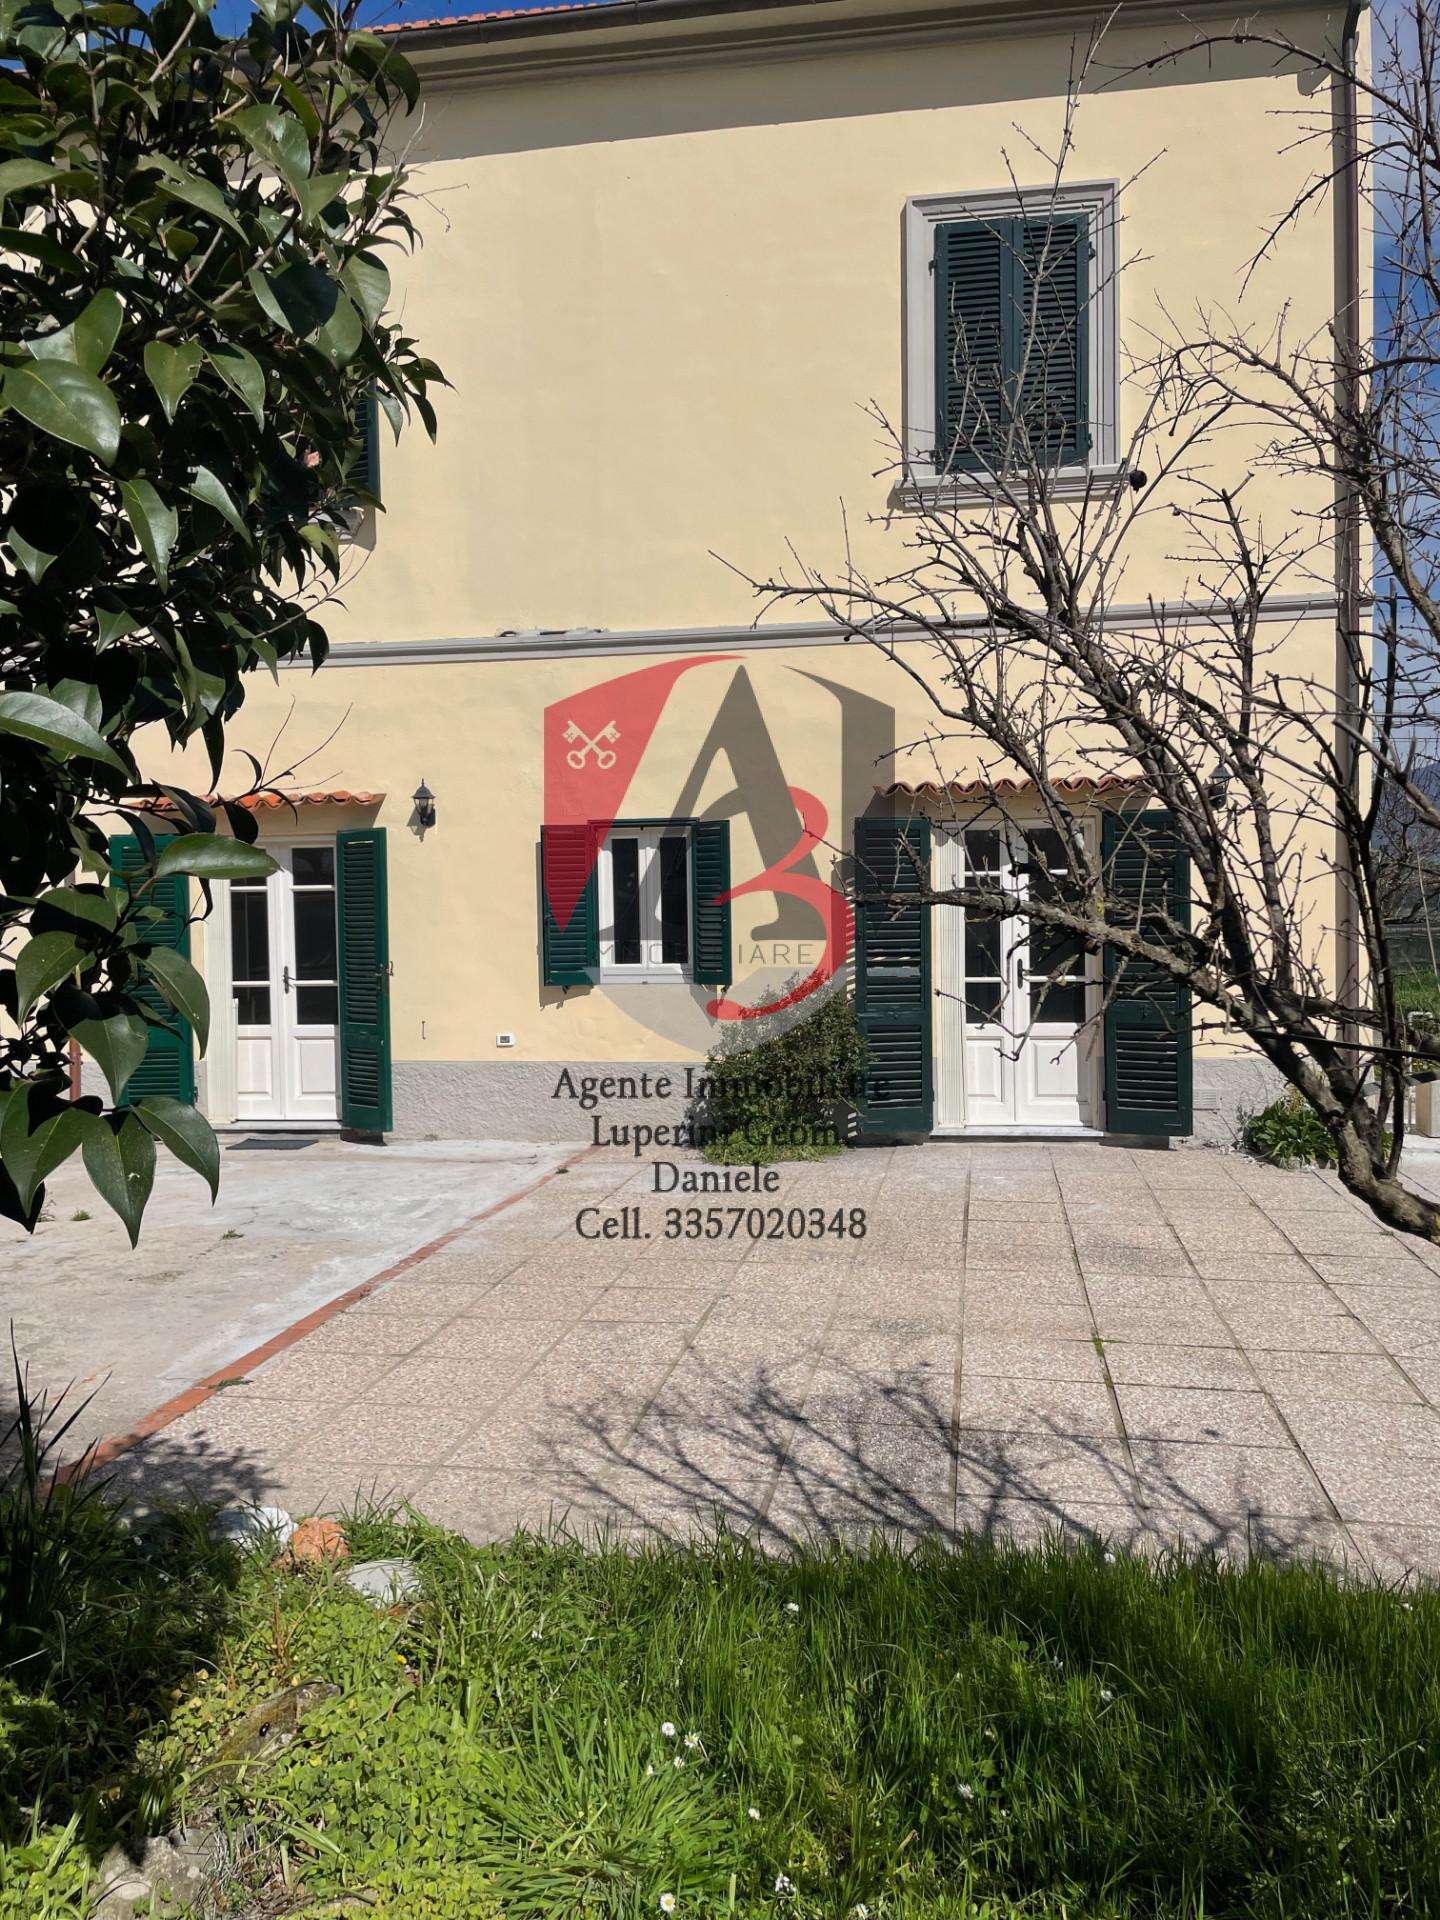 Palazzo - Stabile in Vendita a Cascina Titignano,